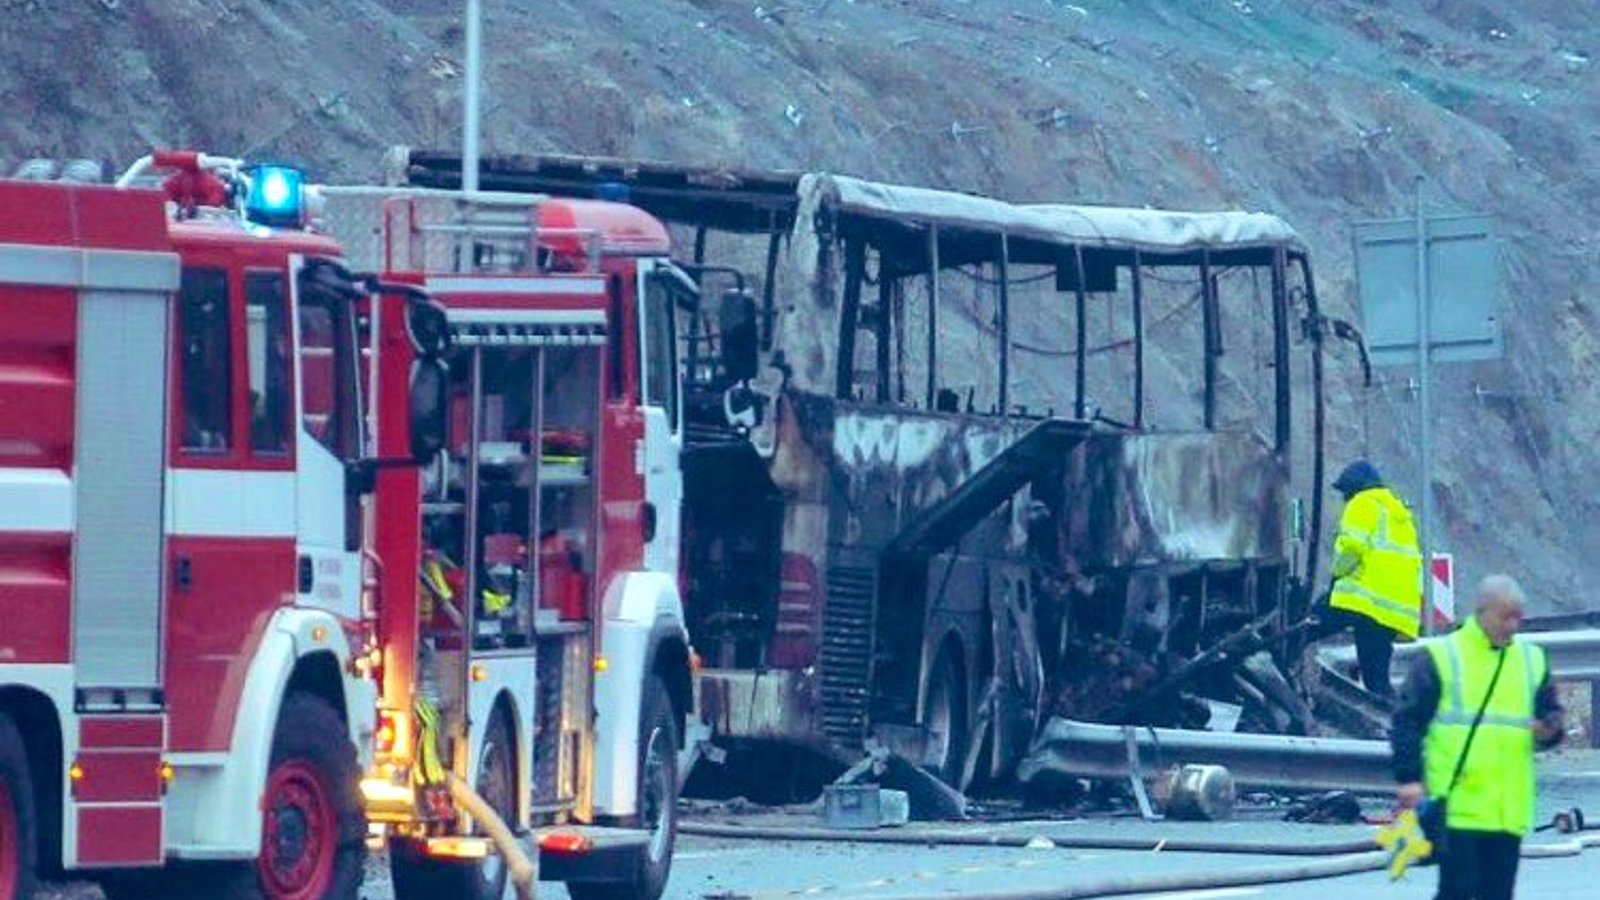 46 morts, dont 12 enfants, dans l'incendie d'un autobus sur l'autoroute